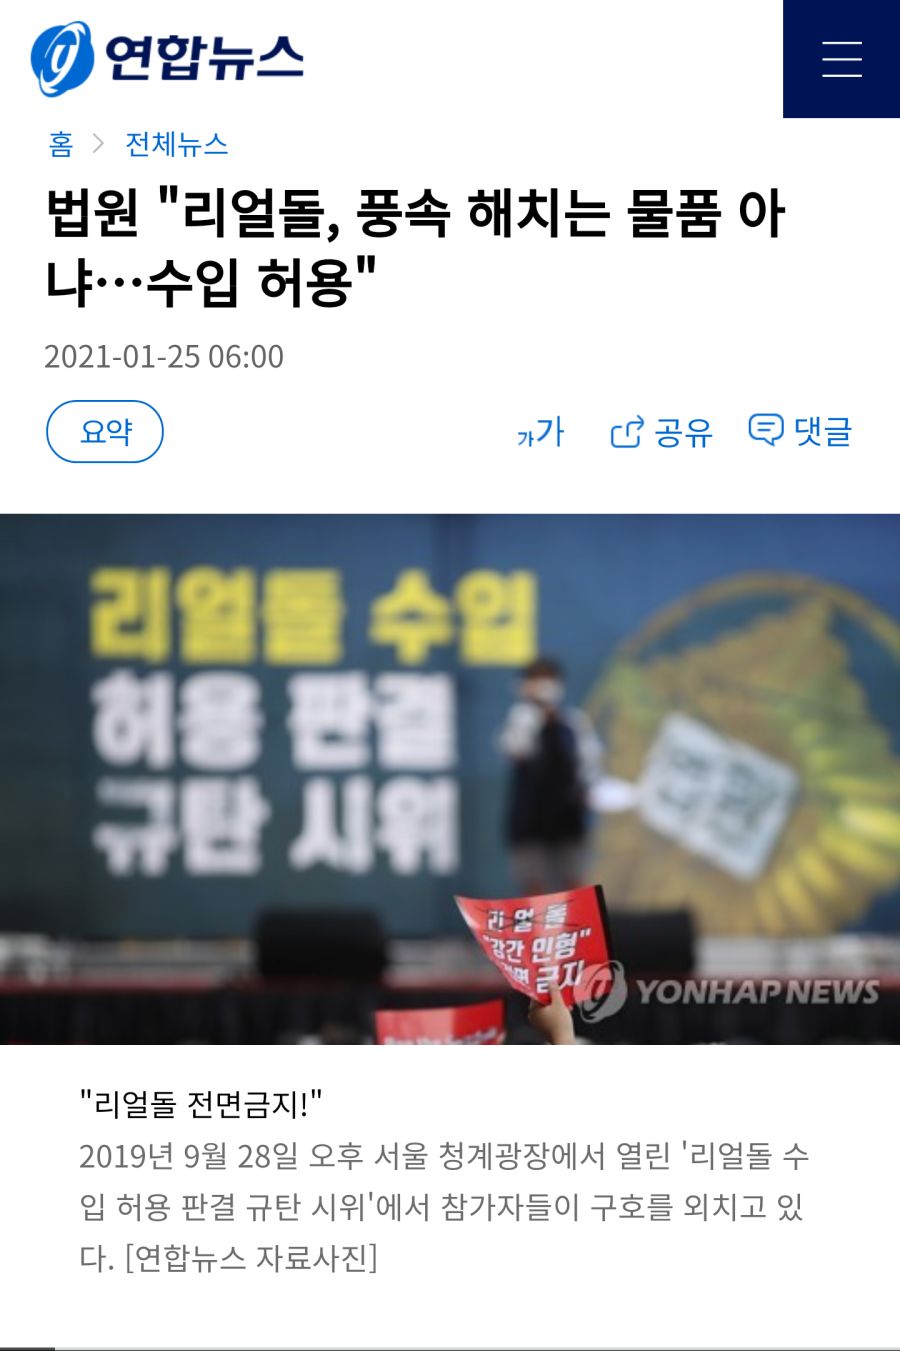 법원 -리얼돌, 풍속 해치는 물품 아냐…수입 허용- - 연합뉴스.jpg